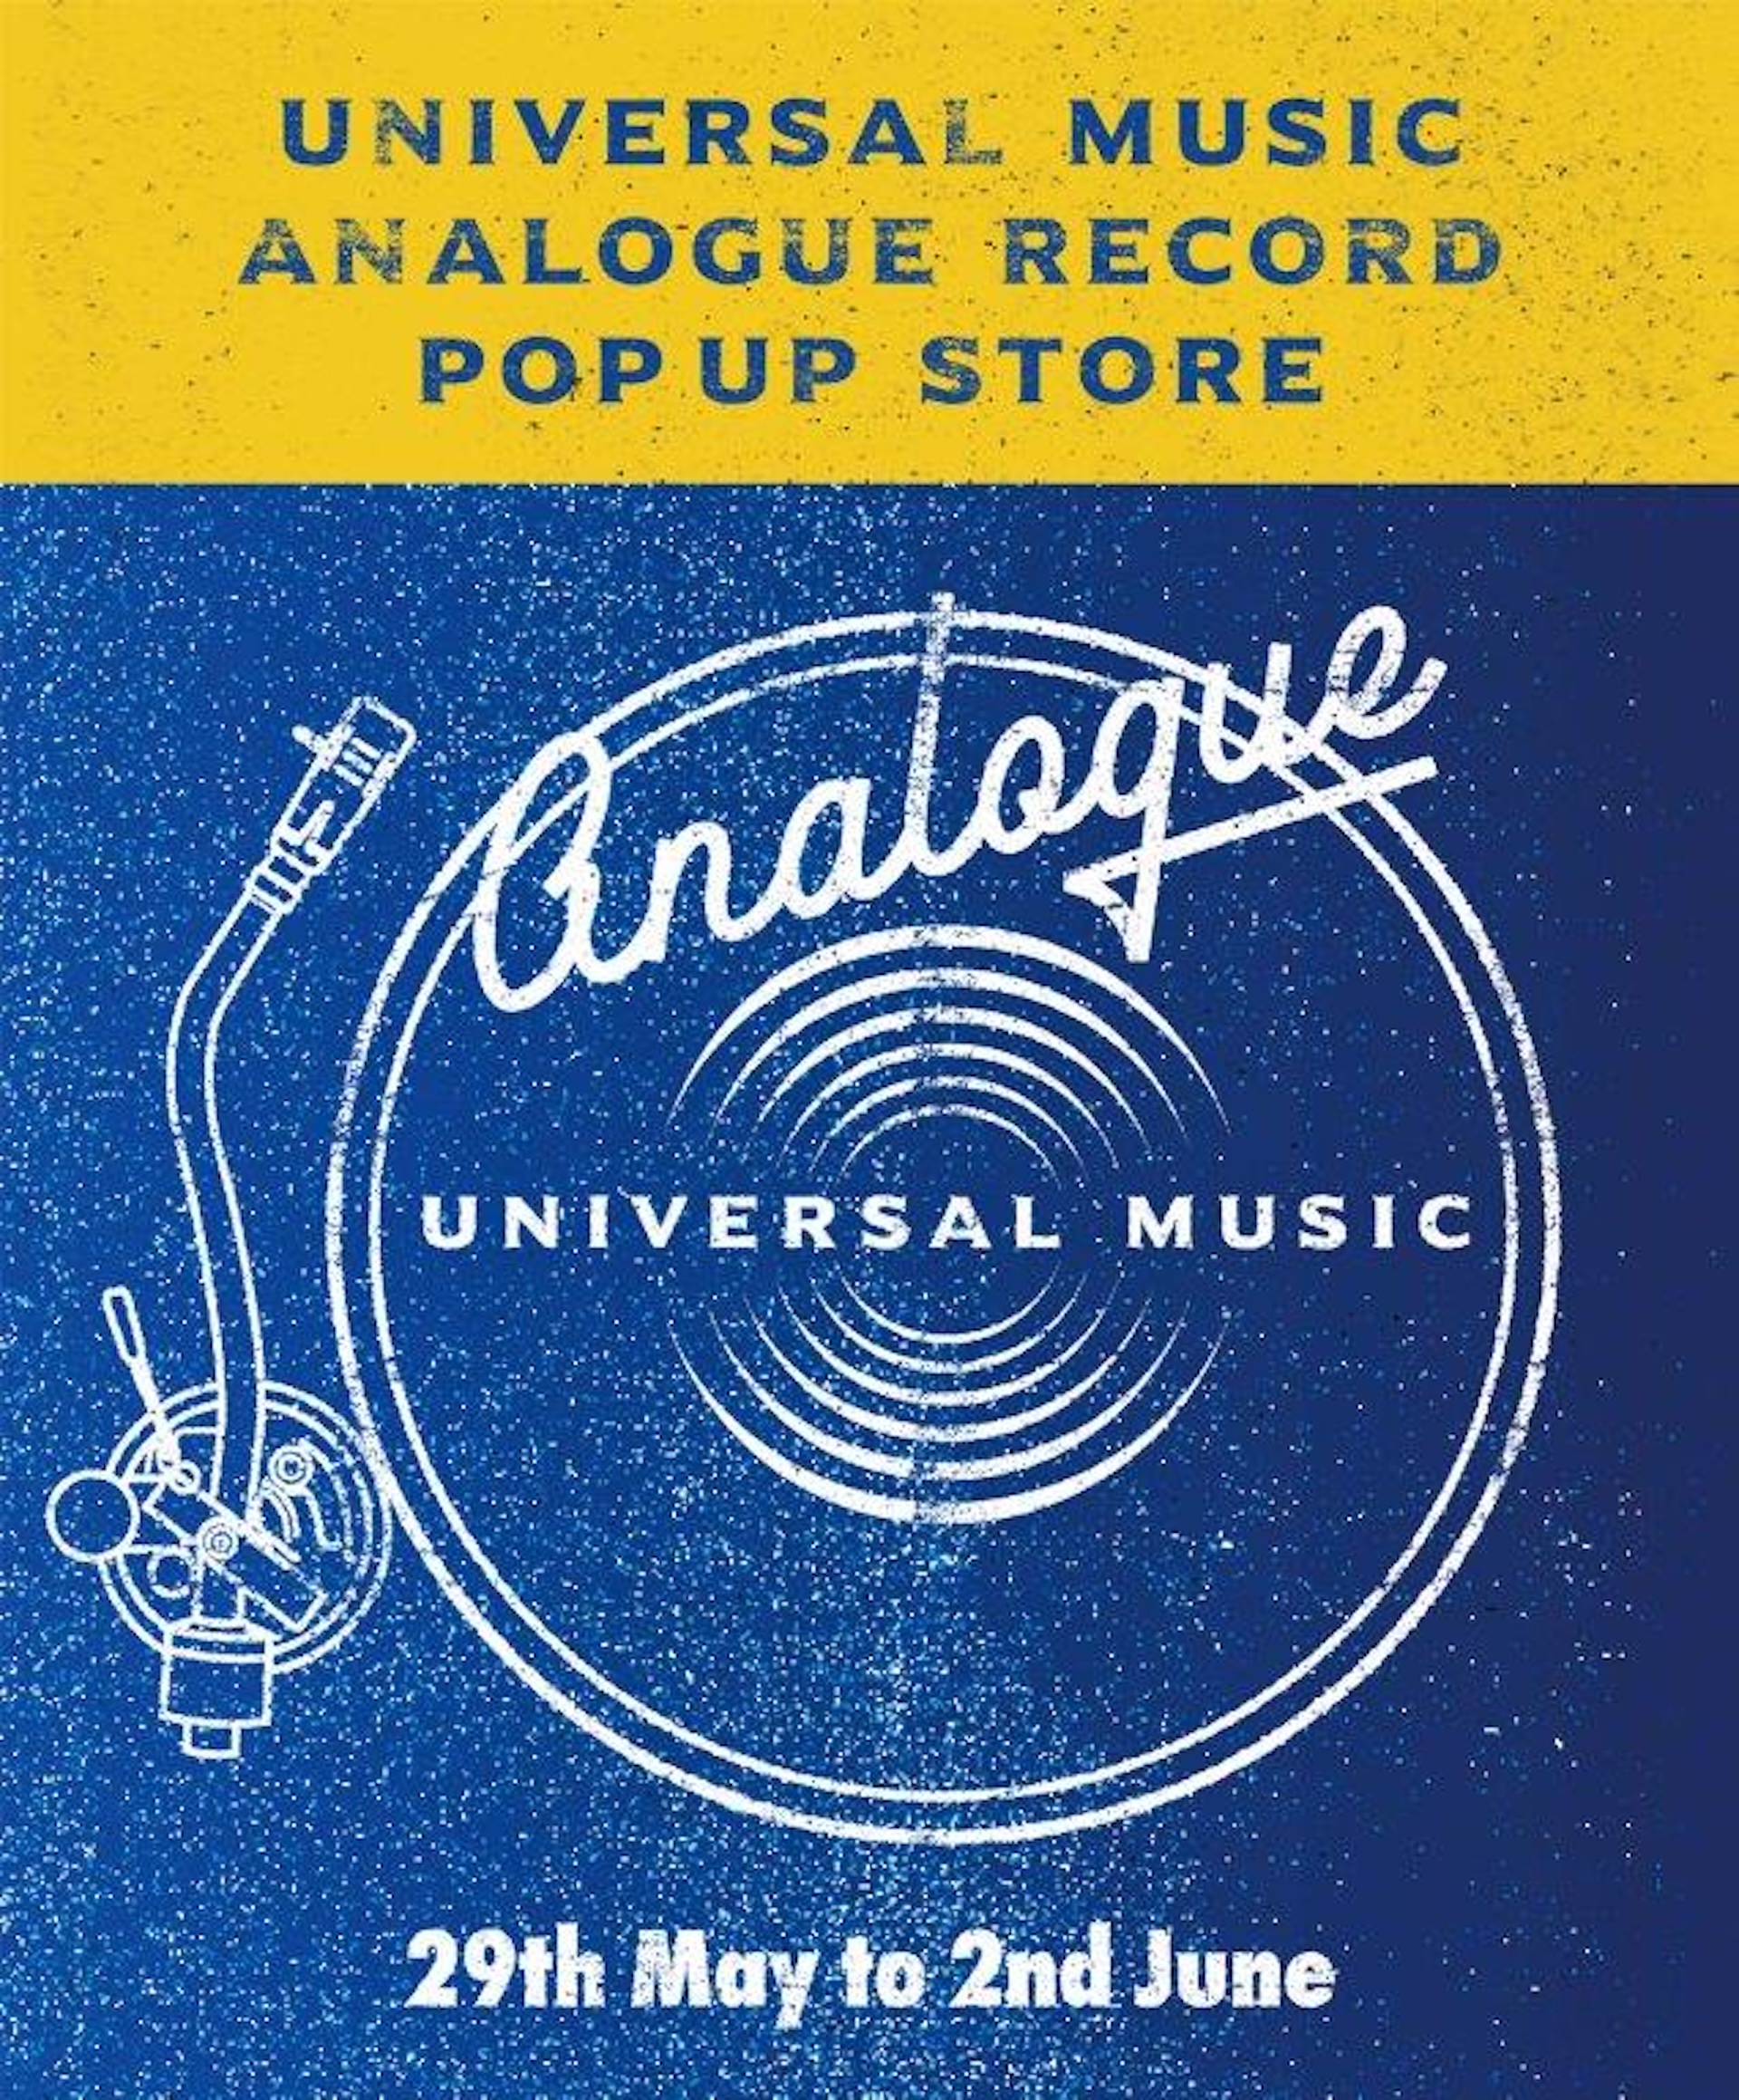 UNIVERSAL MUSIC ANALOGUE RECORD